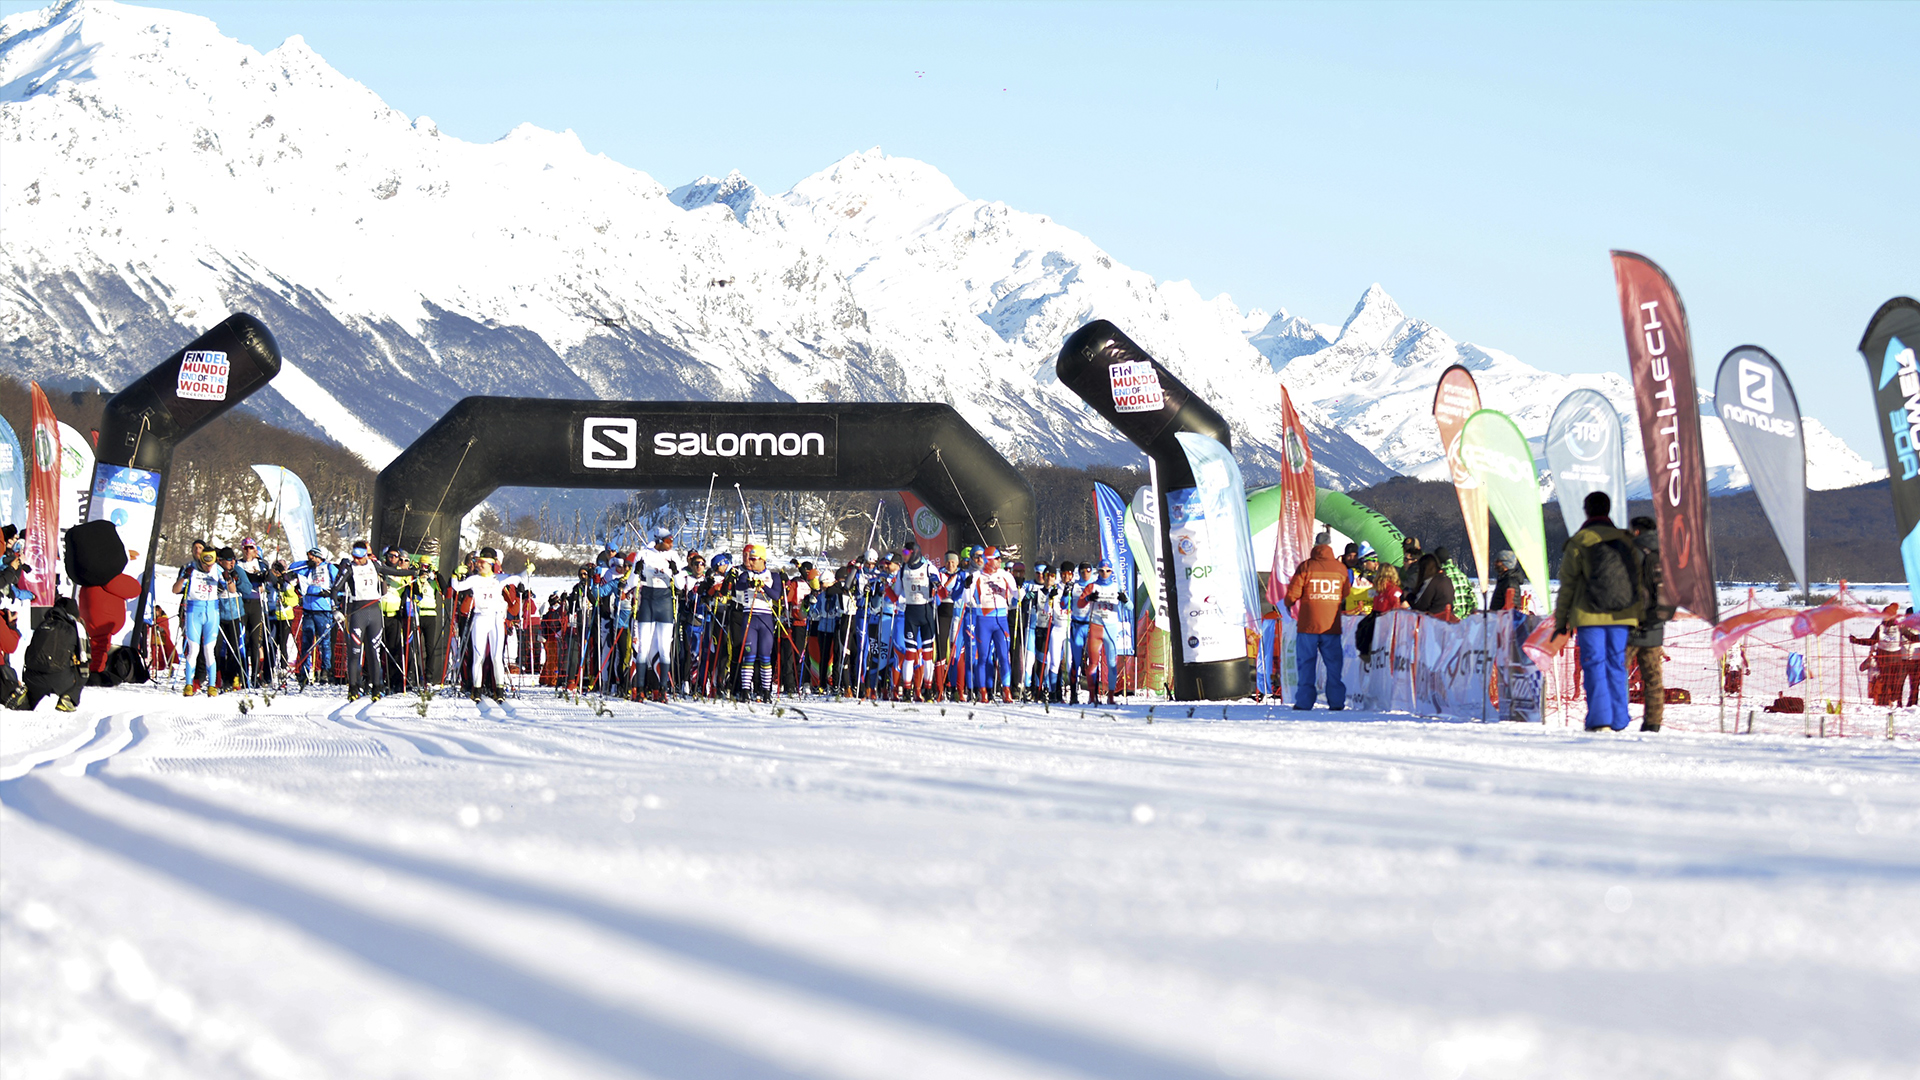 La tradicional competencia de esquí de fondo, Marchablanca, reúne a deportistas y aficionados cada año en el centro invernal Tierra Mayor (Crédito: Instituto Fueguino de Turismo)